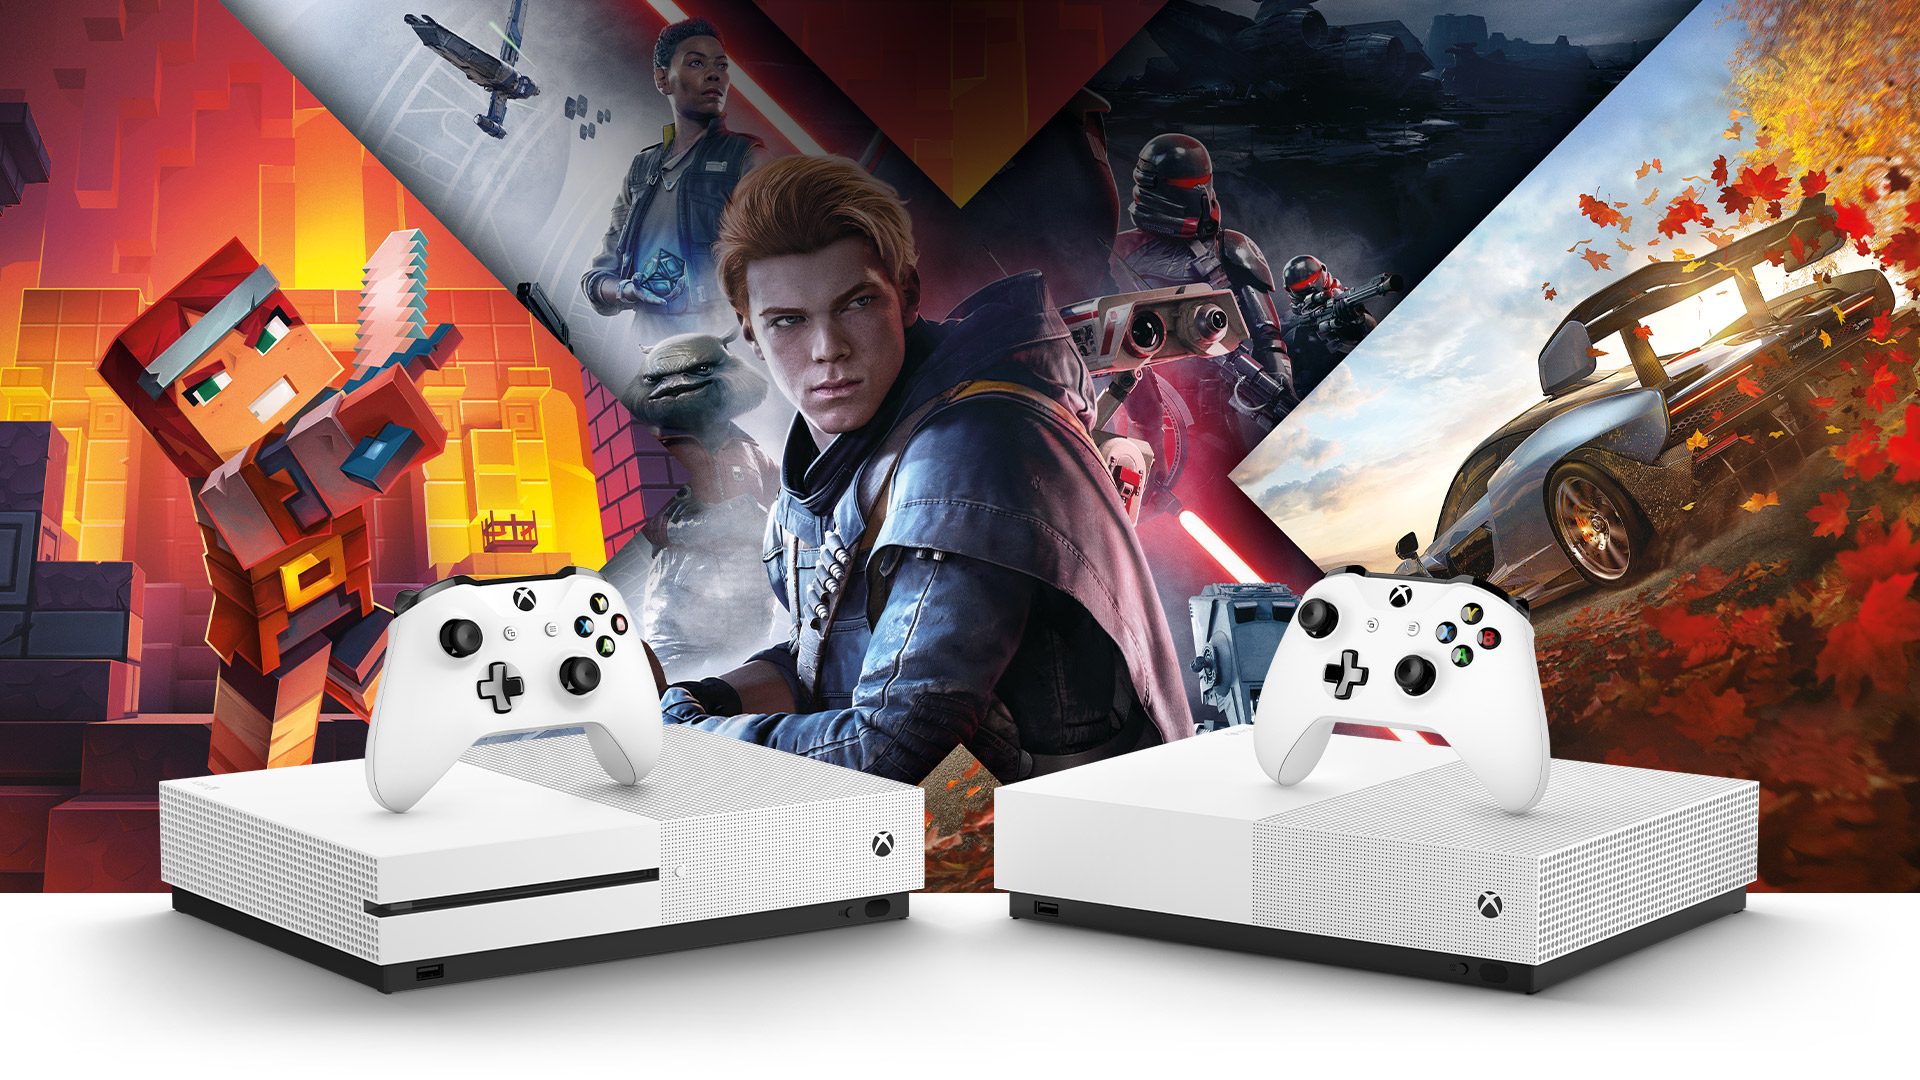 Microsoft stop kembangkan game untuk Xbox One